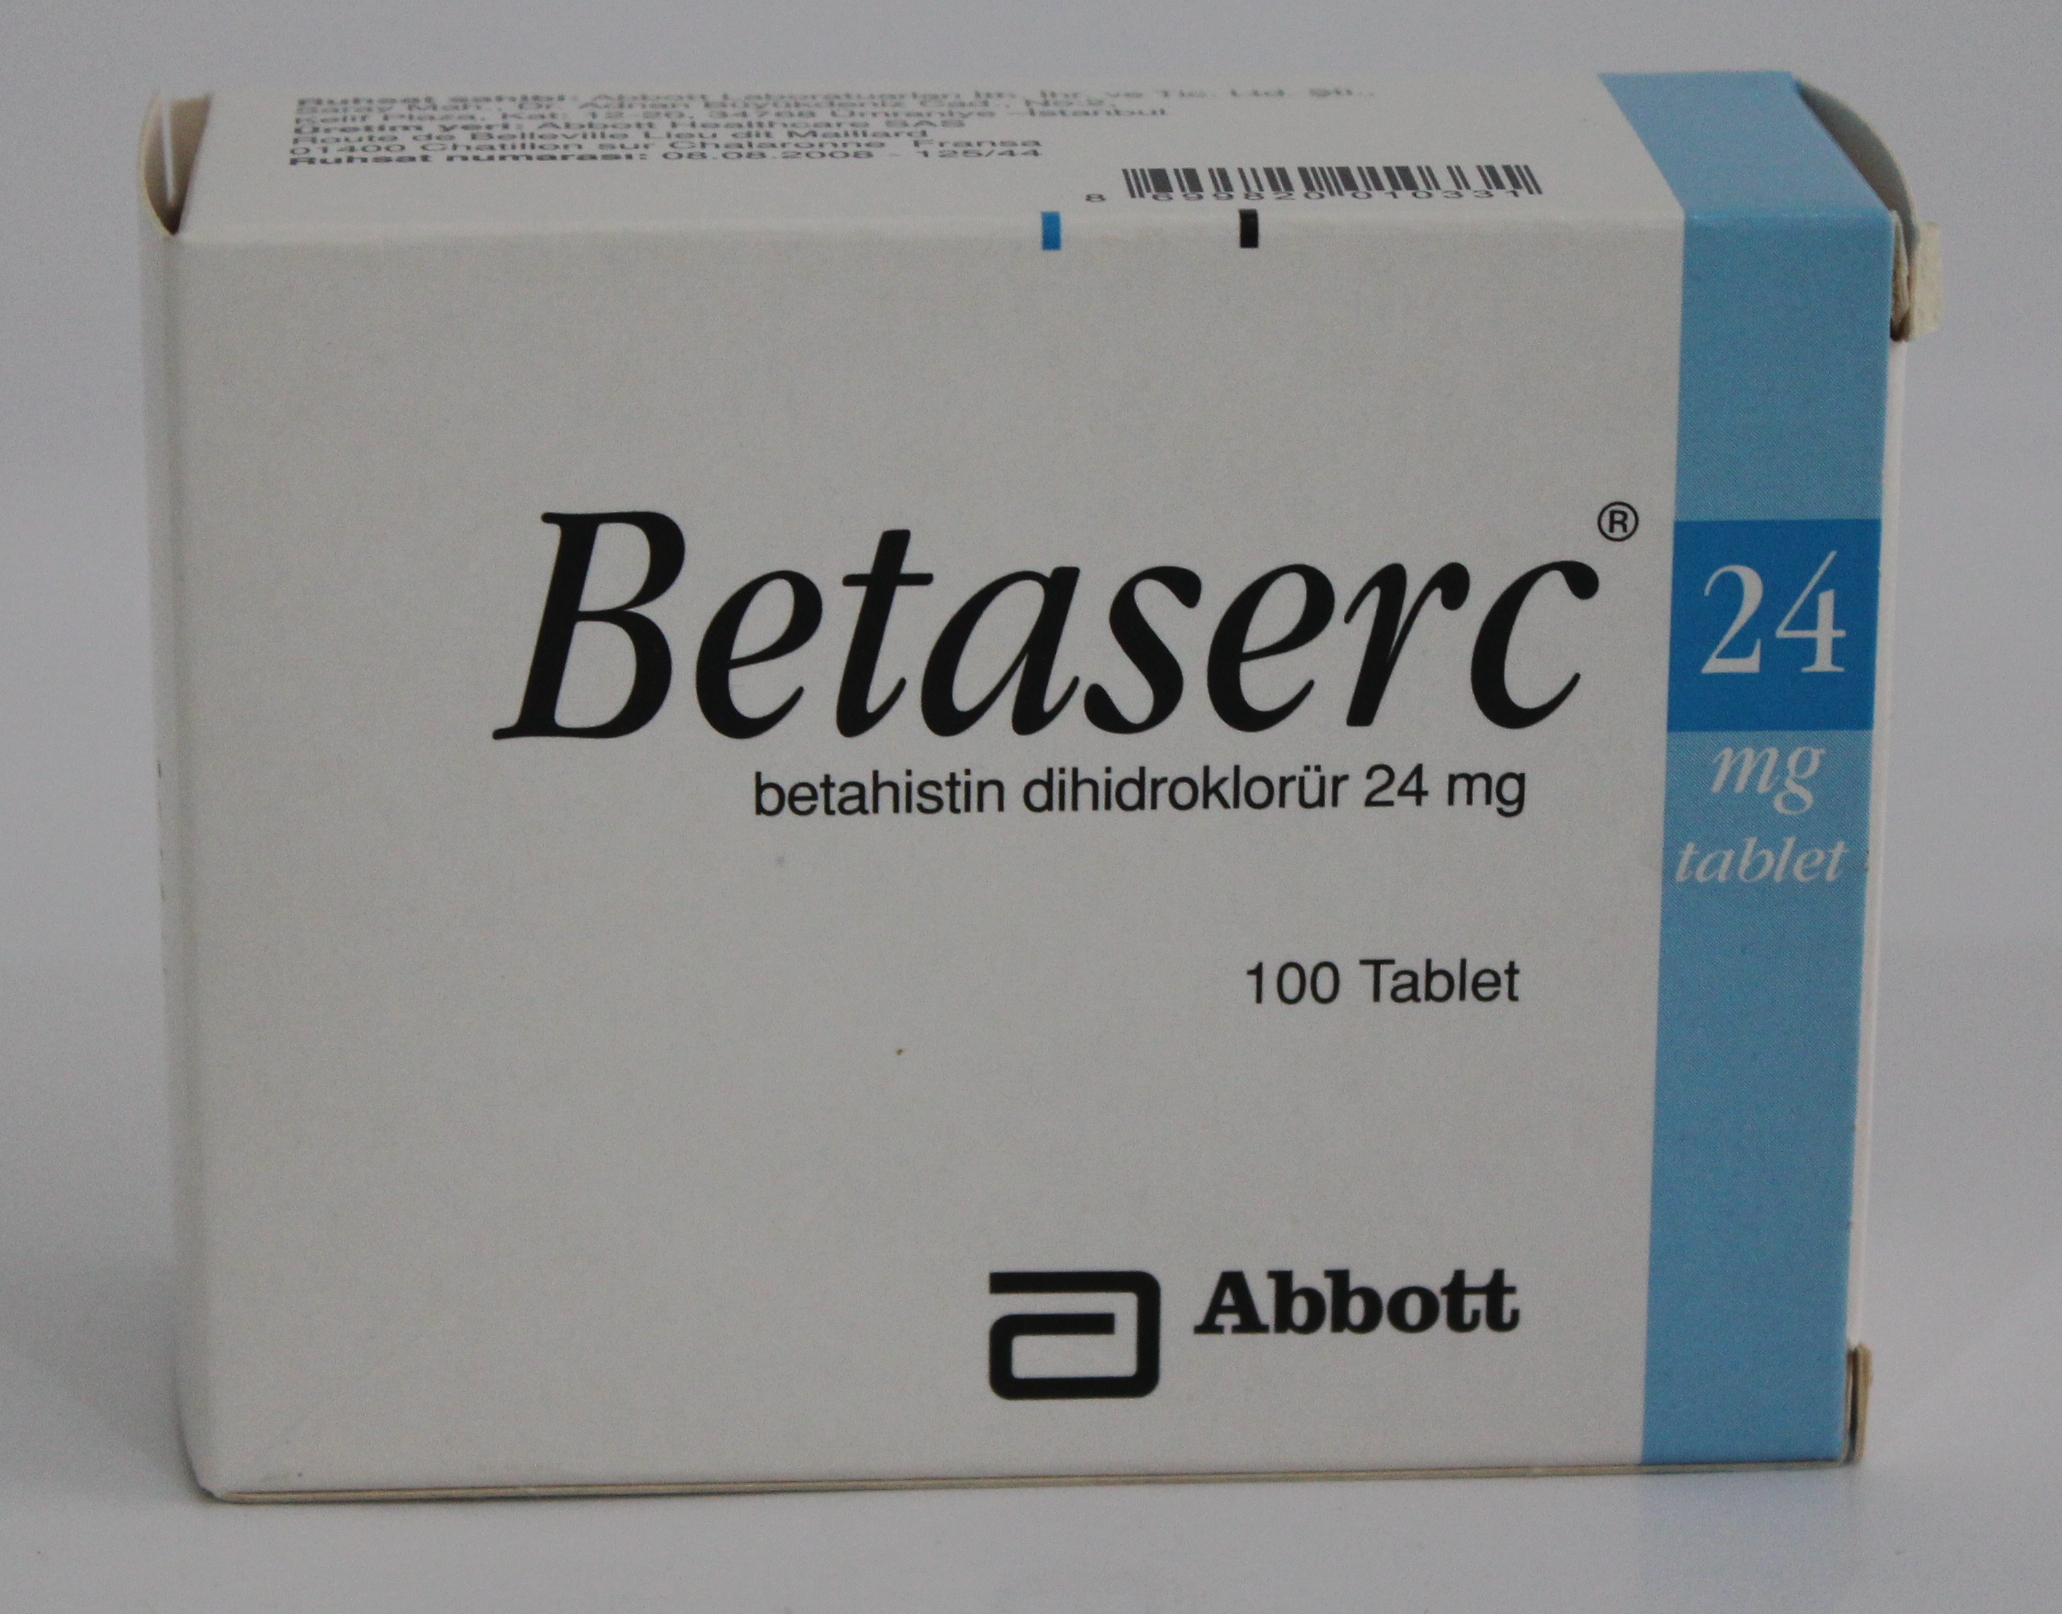  دواء betaserc